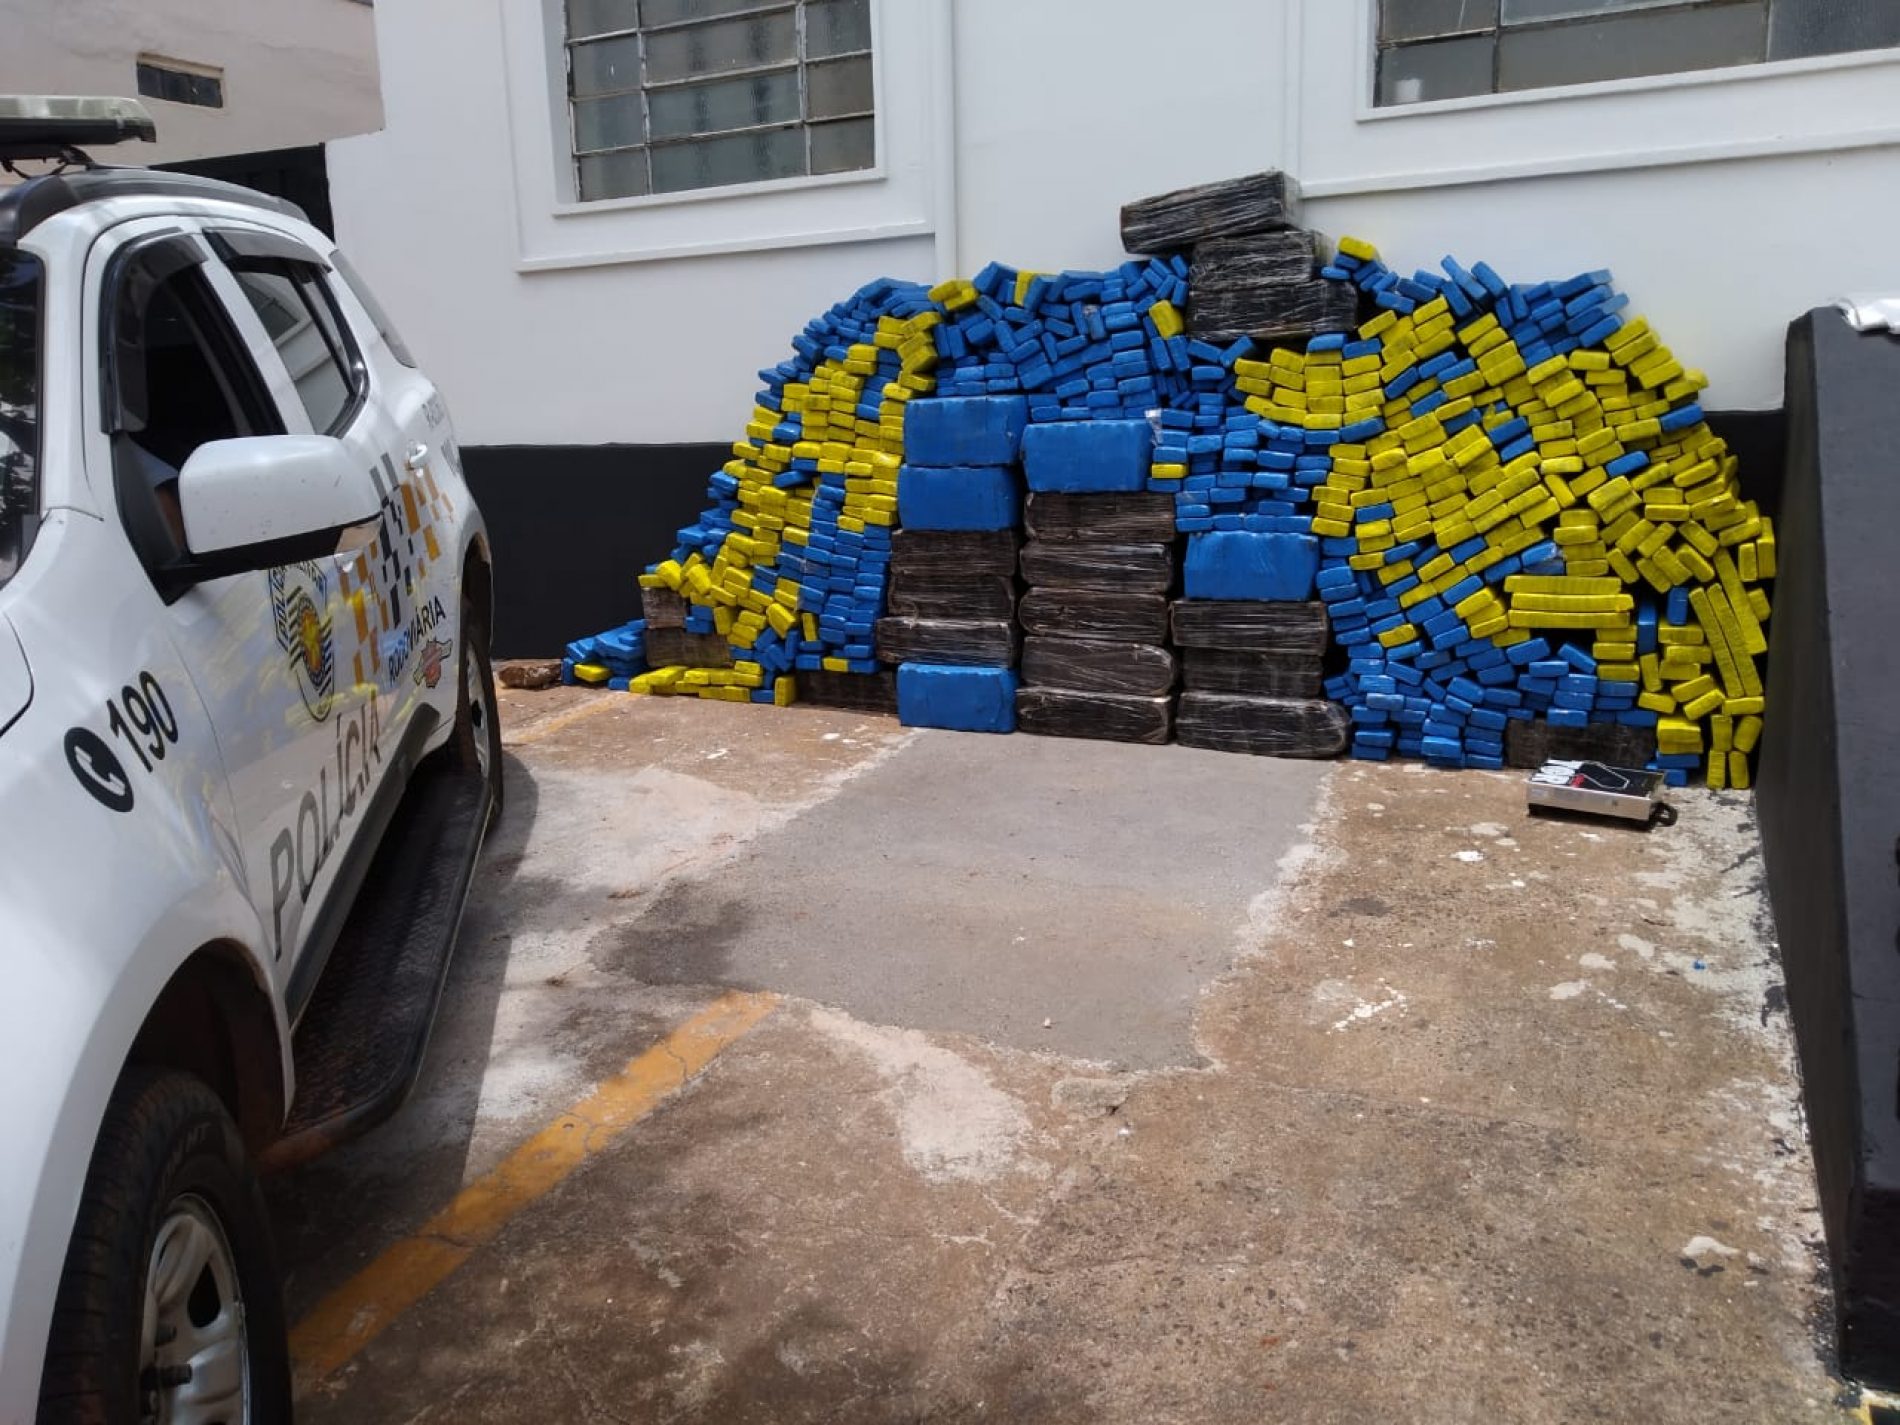 Policia Rodoviária apreende quase 1500 quilos de maconha em duas operações na região